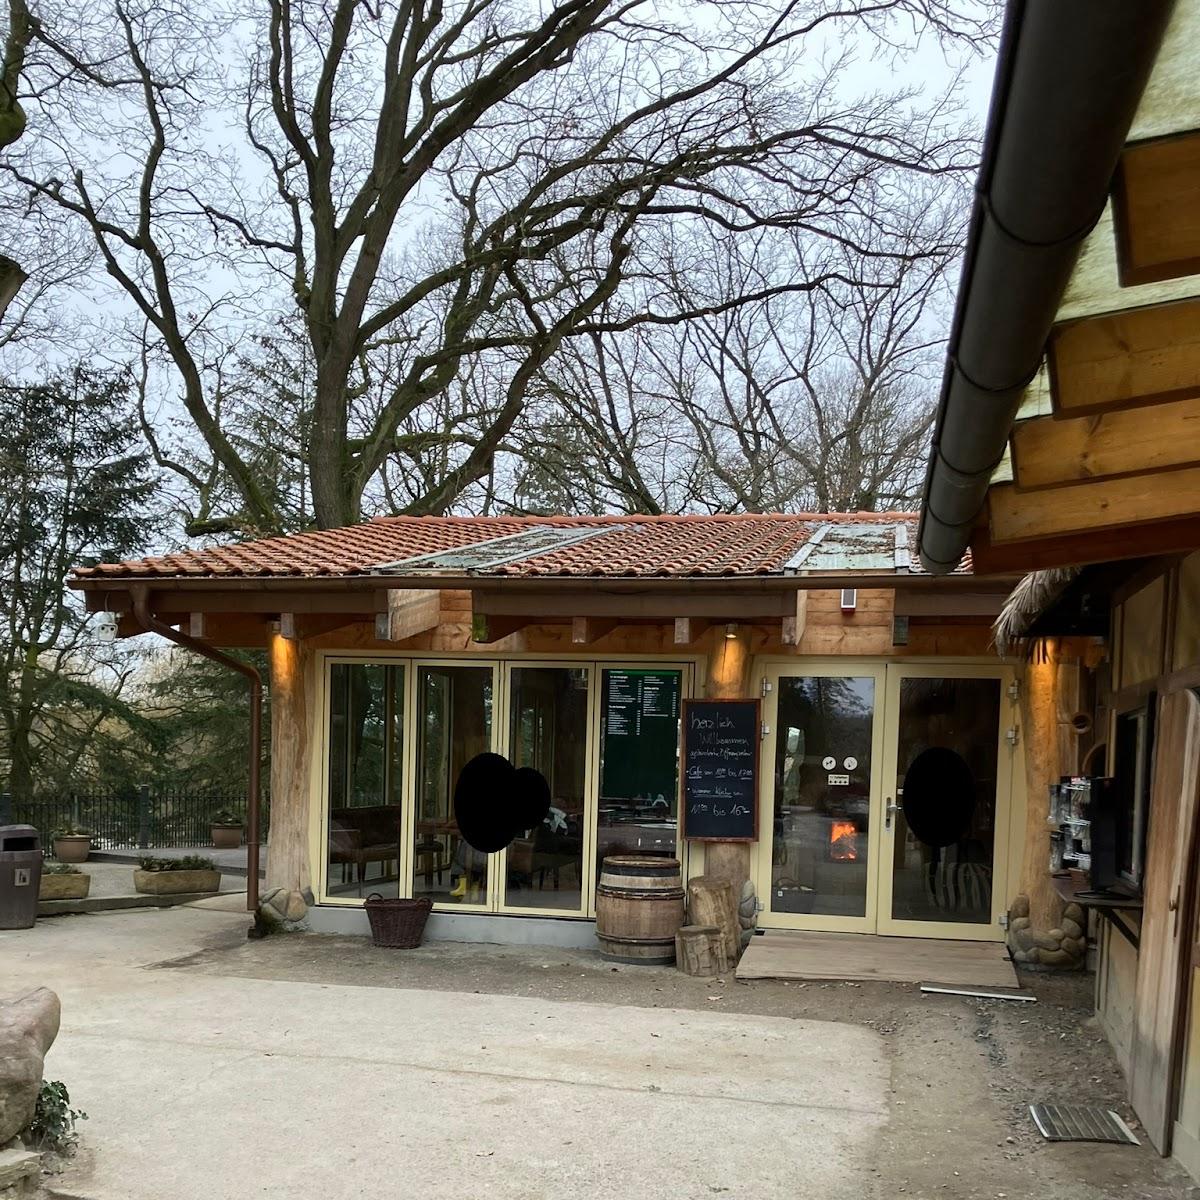 Restaurant "Tierpark Cafe" in Lehre